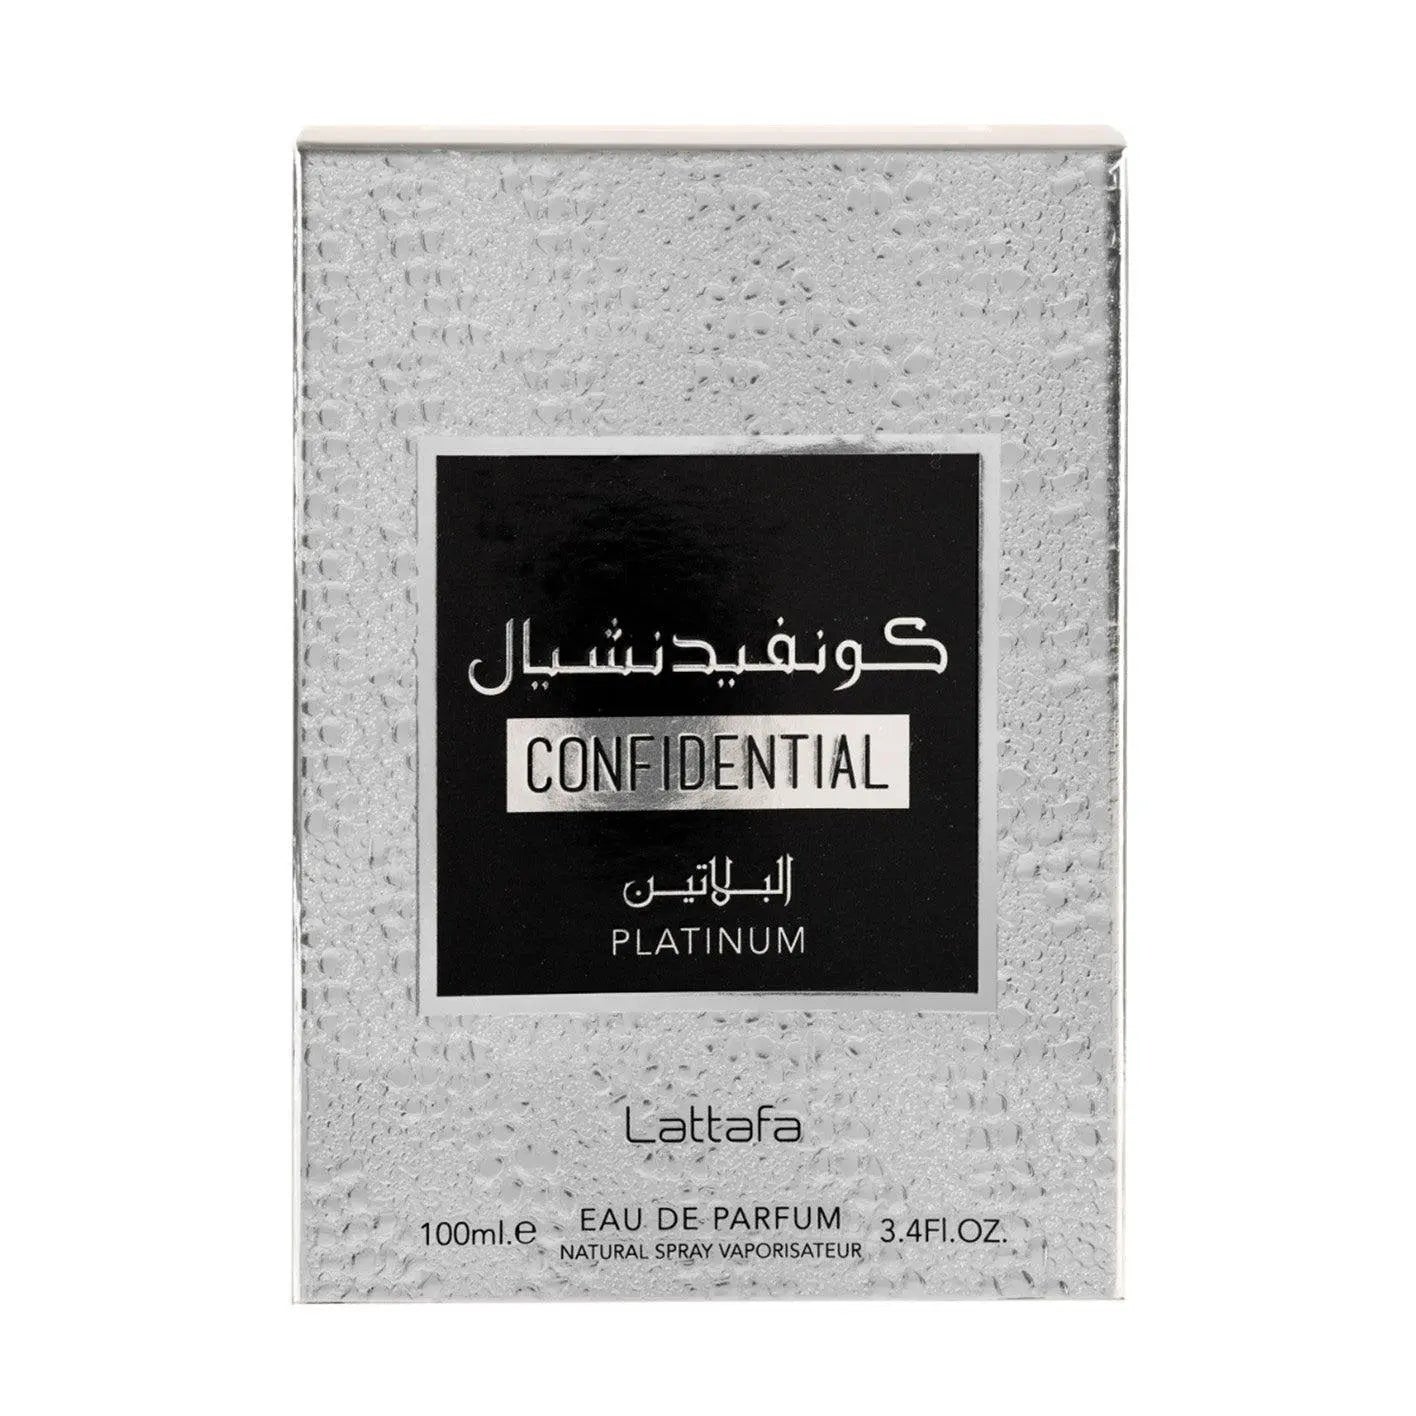 Confidential Platinum Perfume 100ml EDP Lattafa